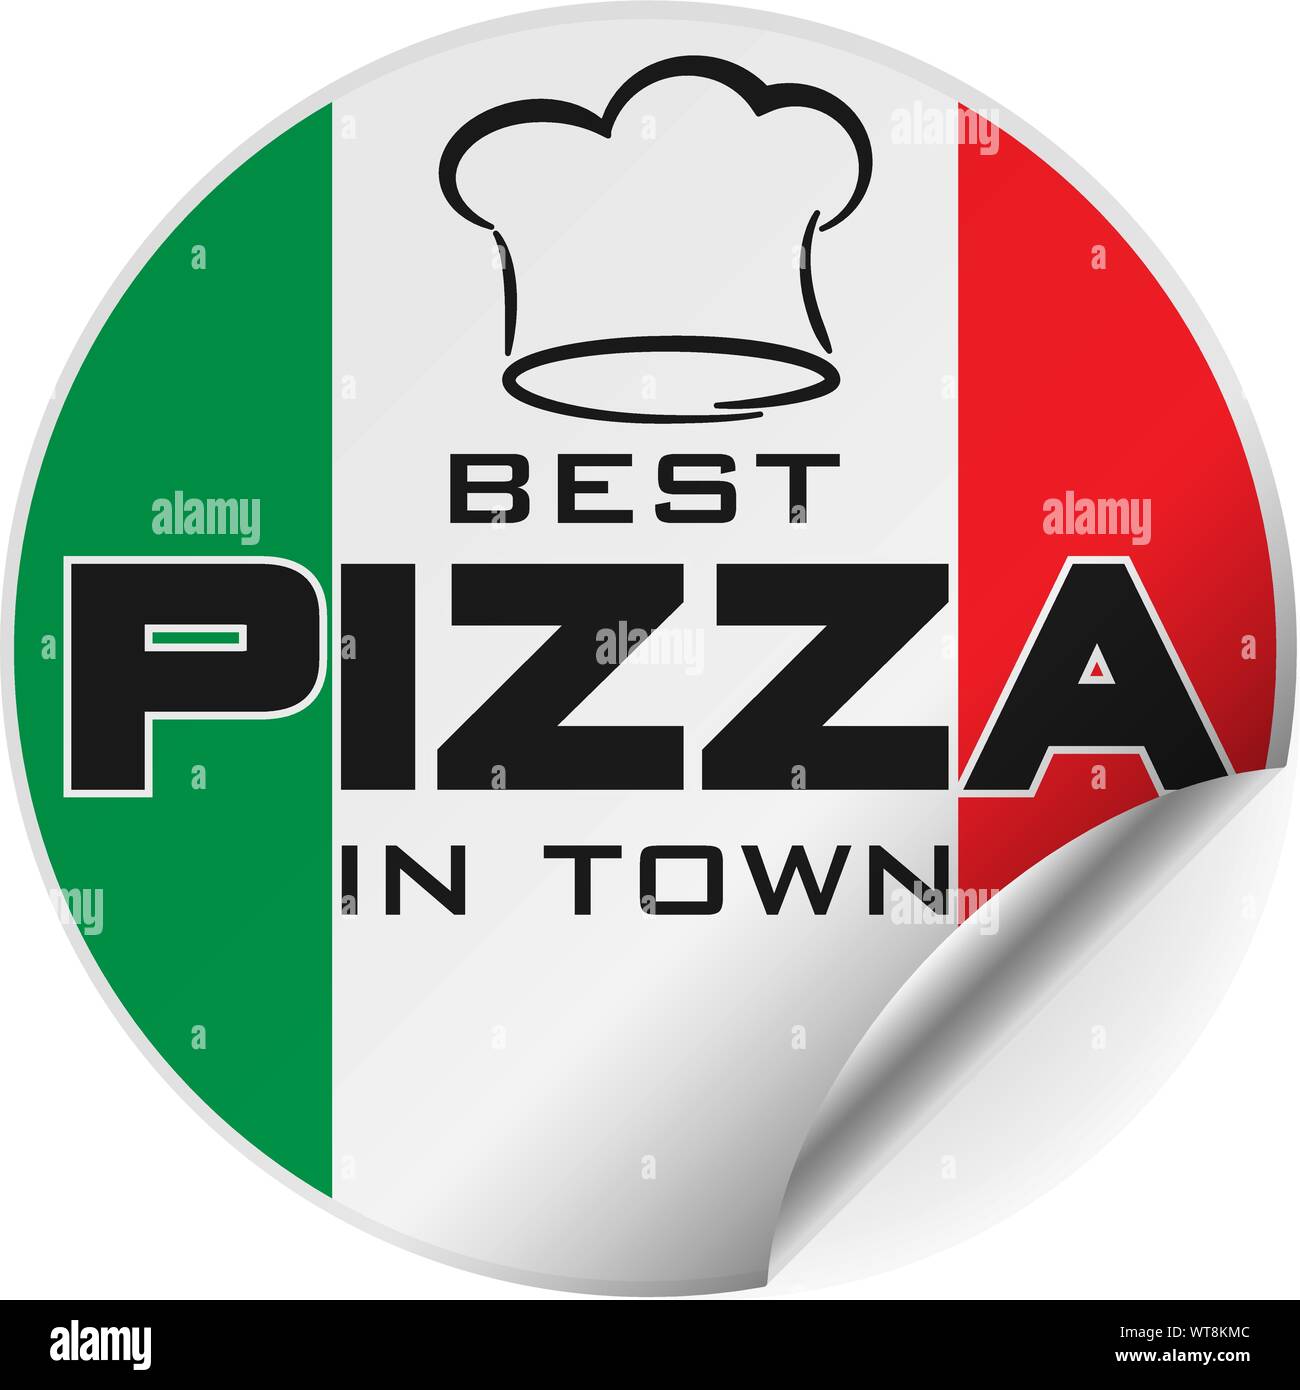 Meilleures pizzas de la ville ronde ou autocollant badge avec drapeau italien et toque, un côté s'illustraion de vecteur Illustration de Vecteur